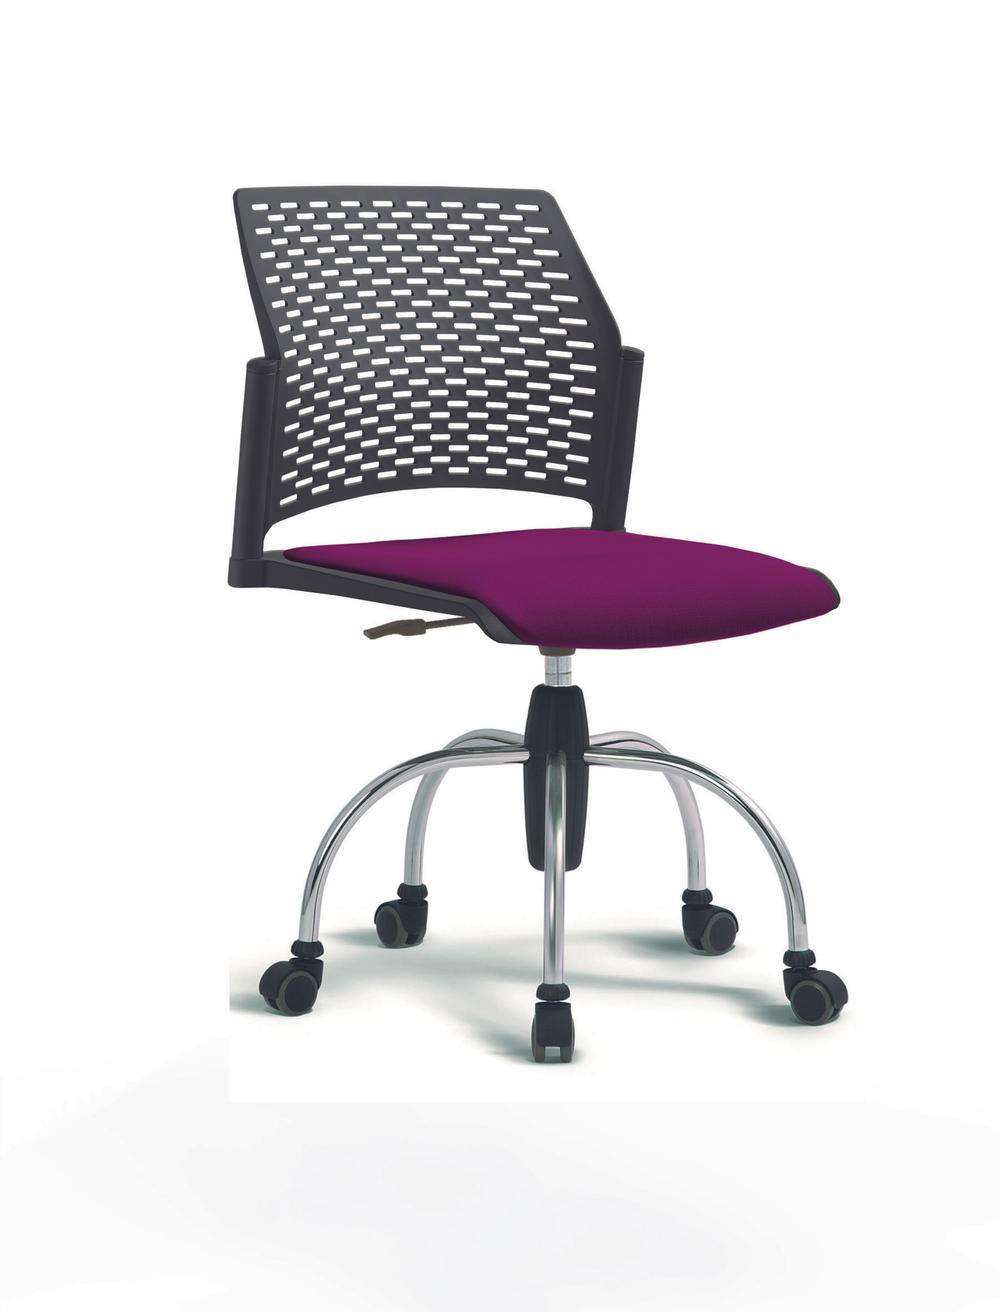 Кресло Rewind каркас хромированный, пластик черный, база паук хромированная, без подлокотников, сиденье фиолетовое